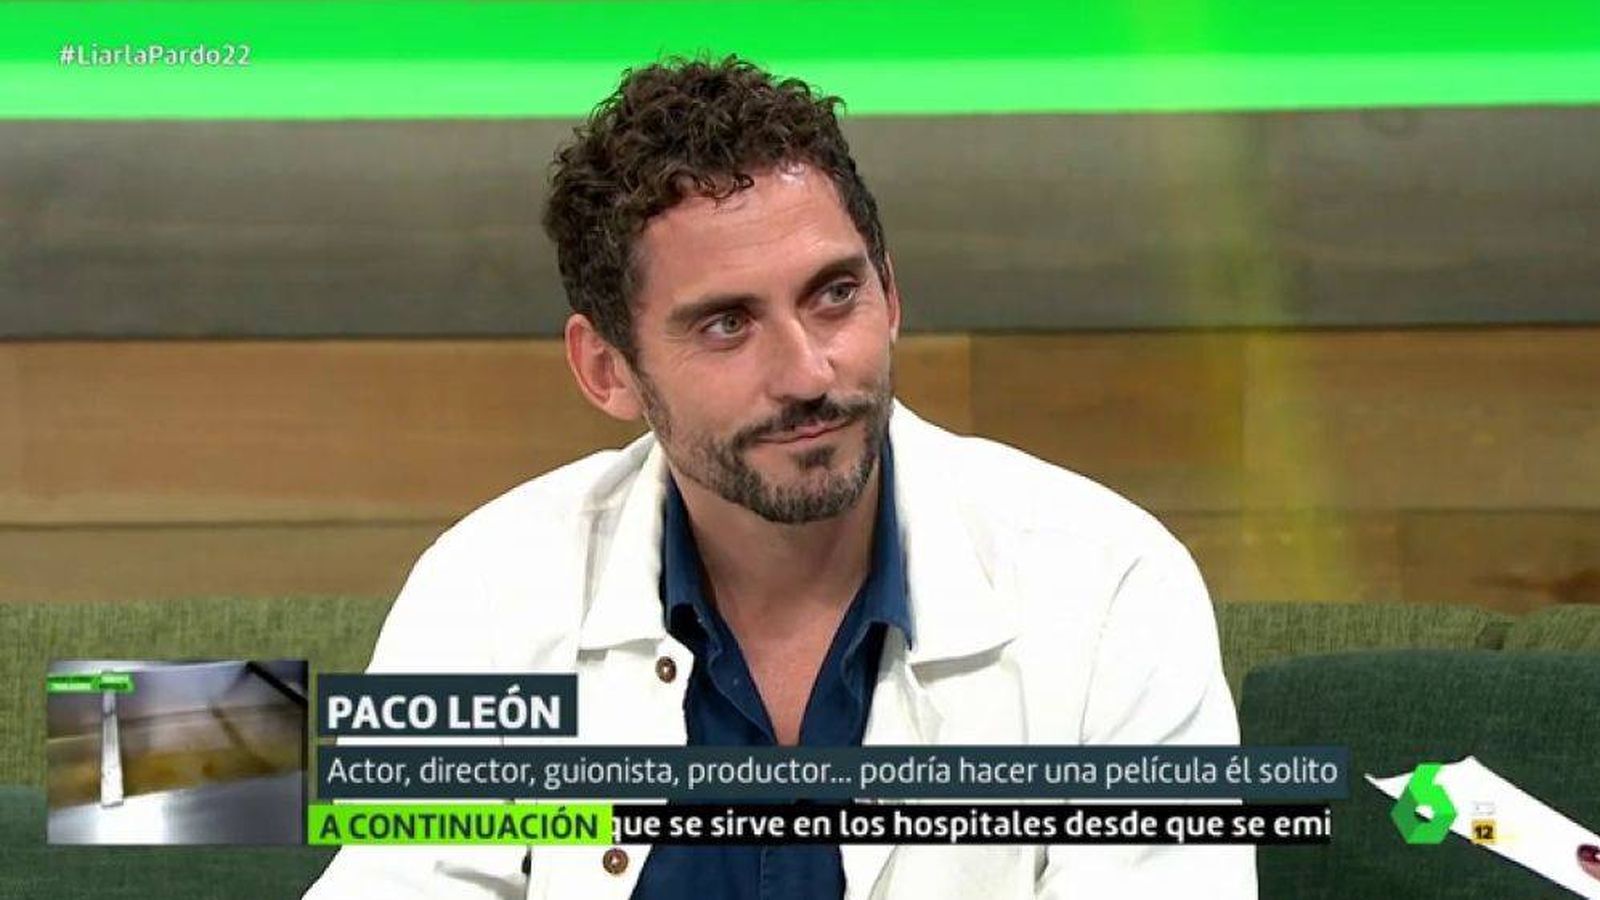 Foto: El actor Paco León, en el programa 'Liarla pardo'. (Atresmedia)